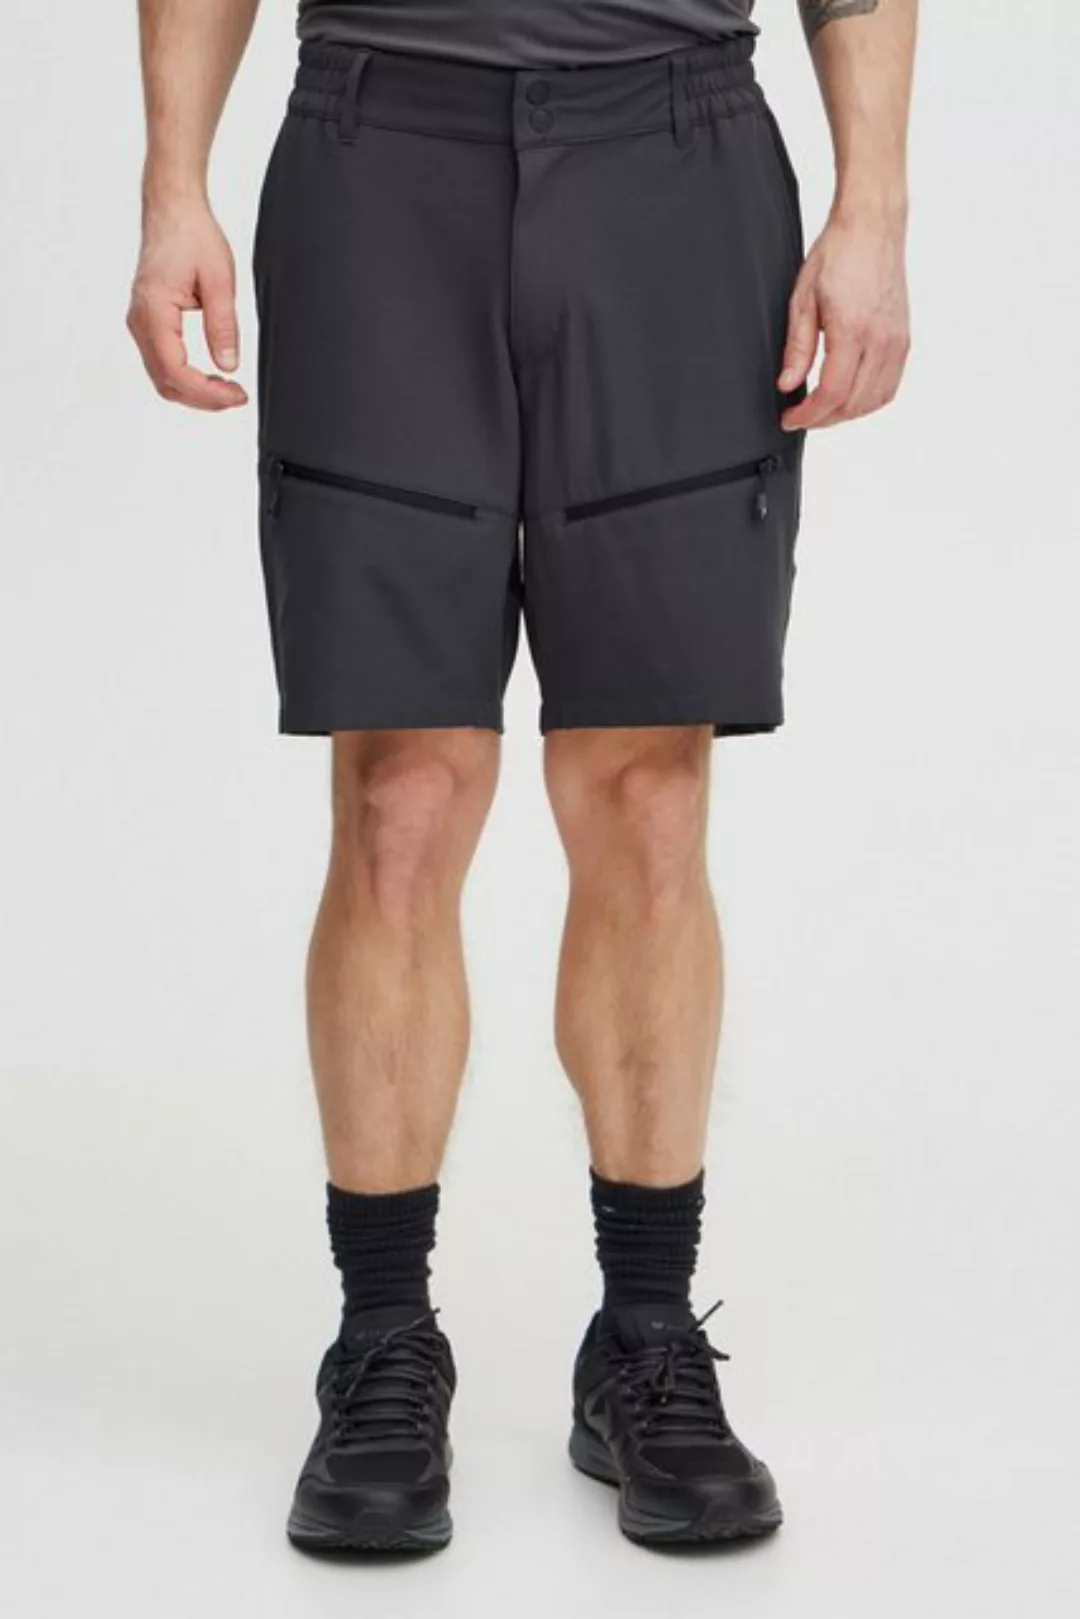 North Bend Trekkinghose NBAvatar M Outdoor Shorts funktionale Outdoorshorts günstig online kaufen